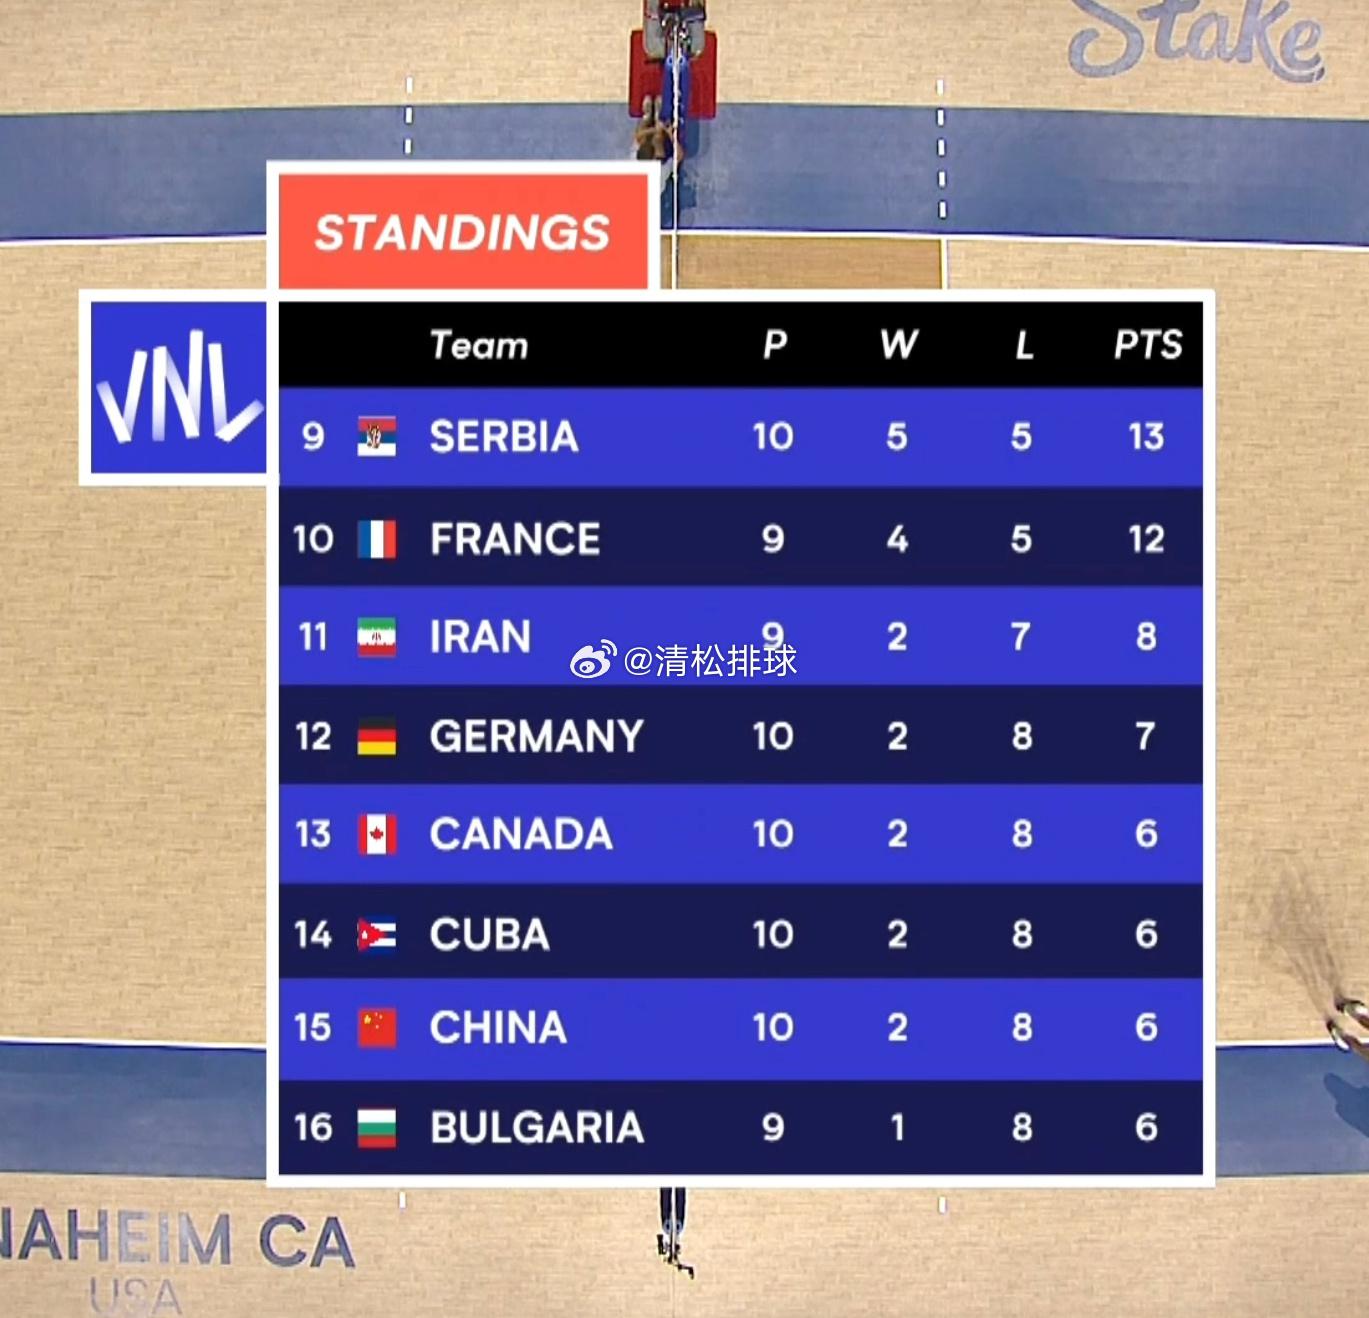 保级形势异常激烈……中国、加拿大、古巴同为2胜8负积6分11:30   保加利亚